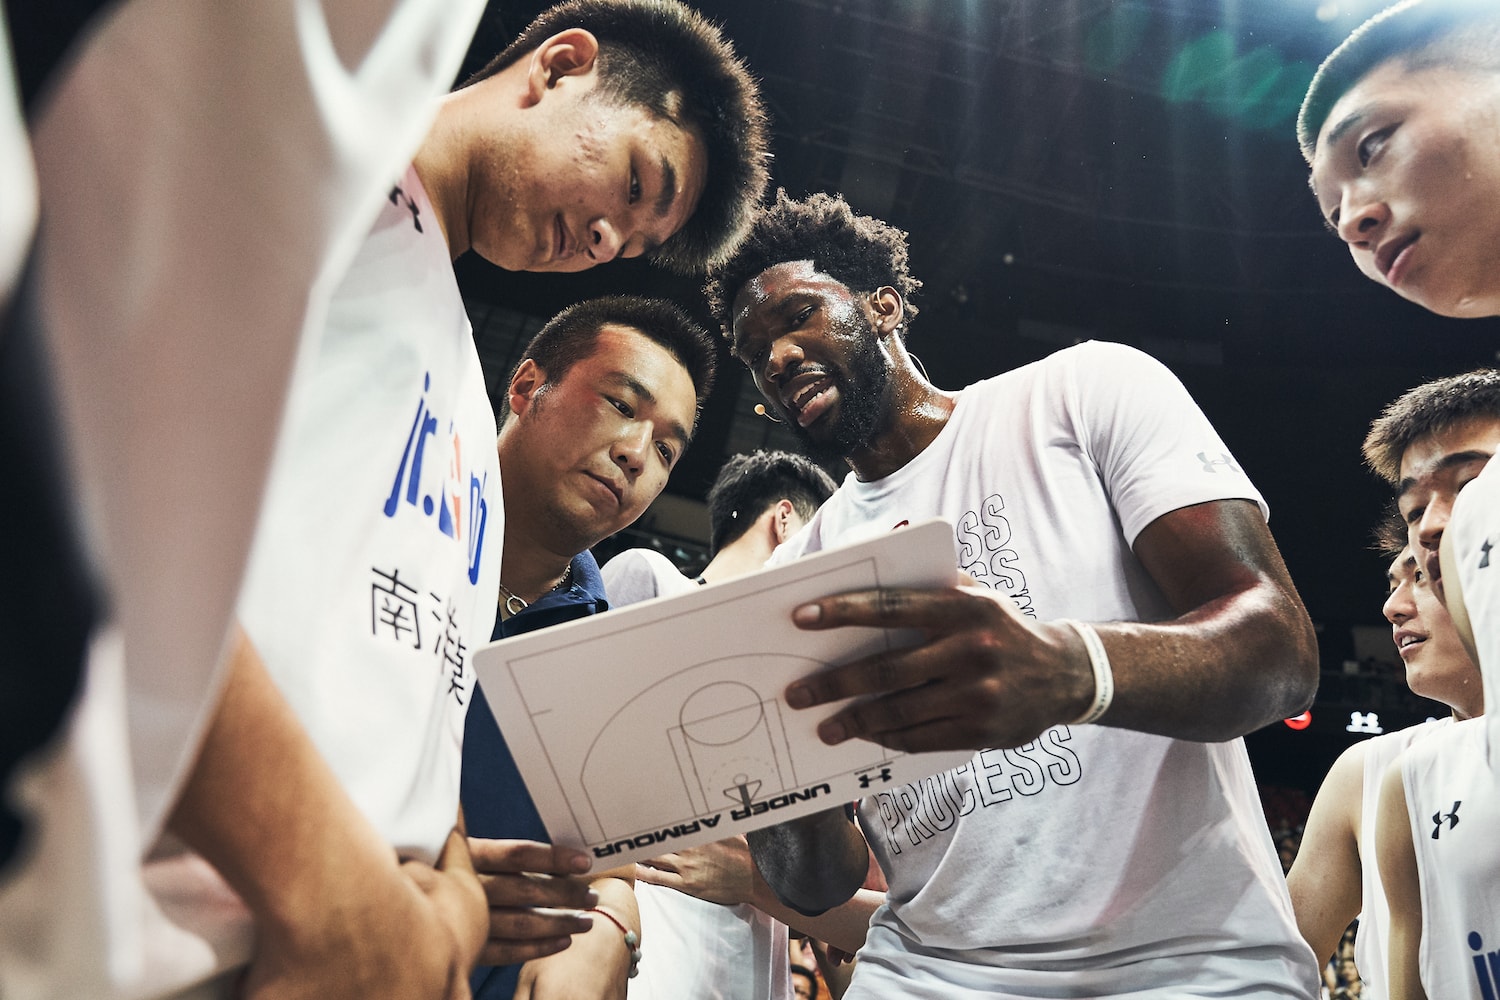 走進 UNDER ARMOUR 2019 籃球中國行上海站活动